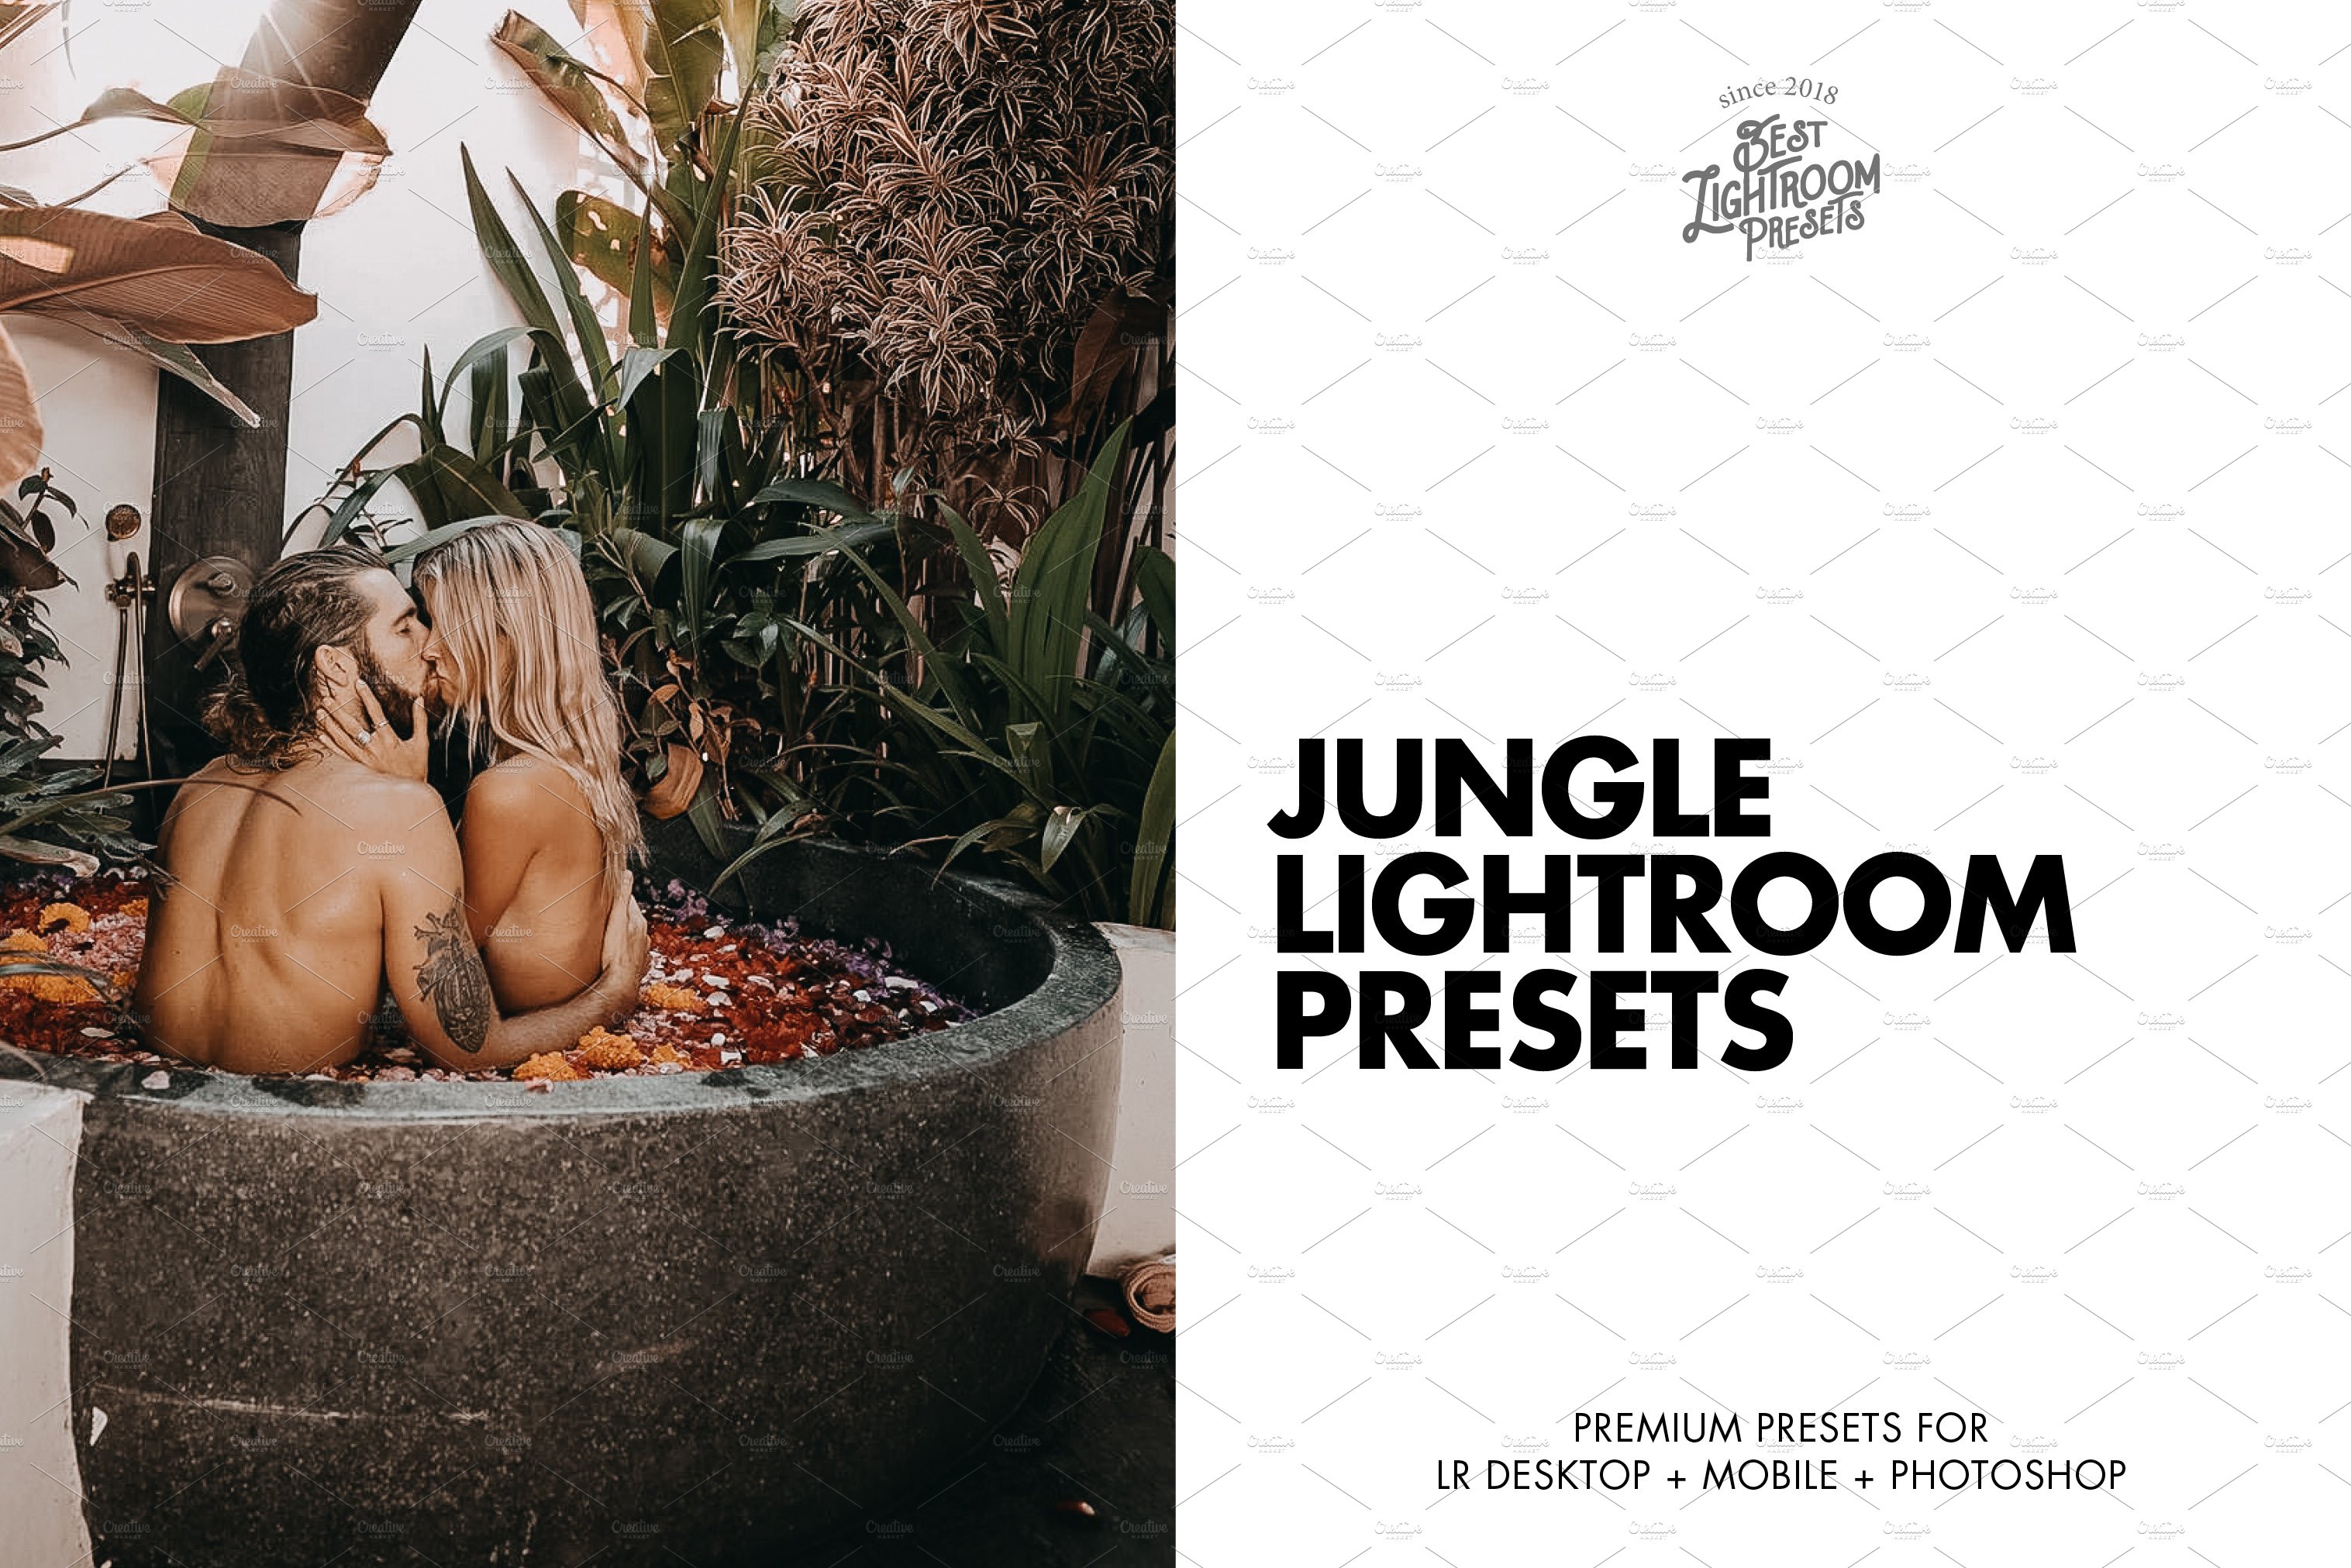 Jungle Lightroom Presetscover image.